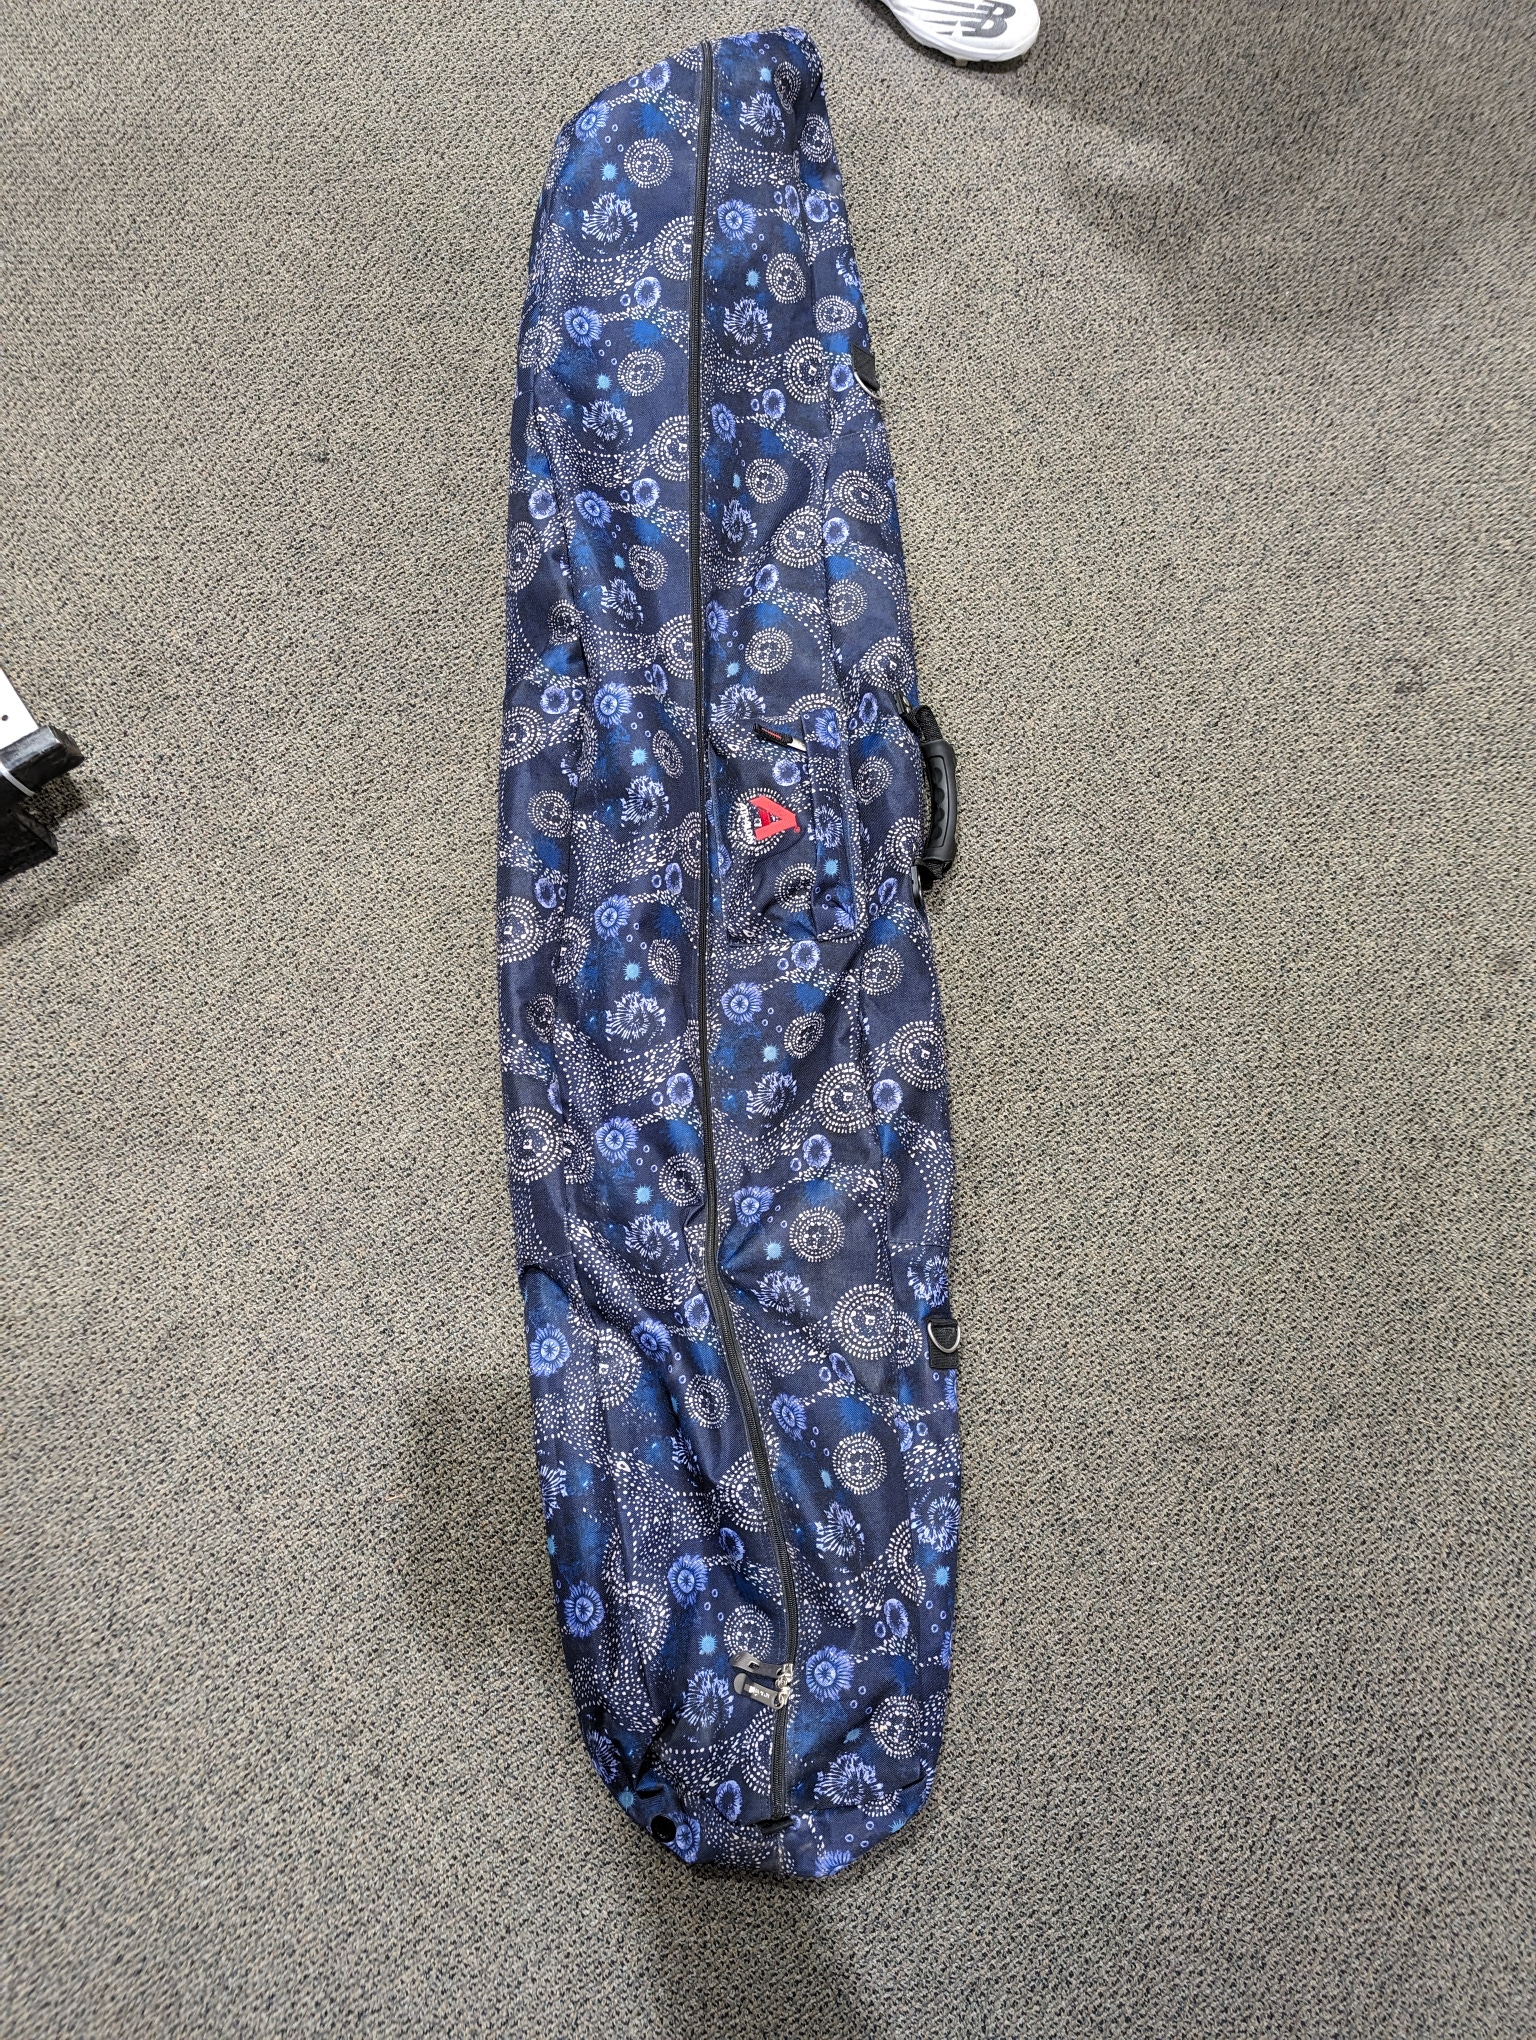 Used Athalon Snowboard Bag